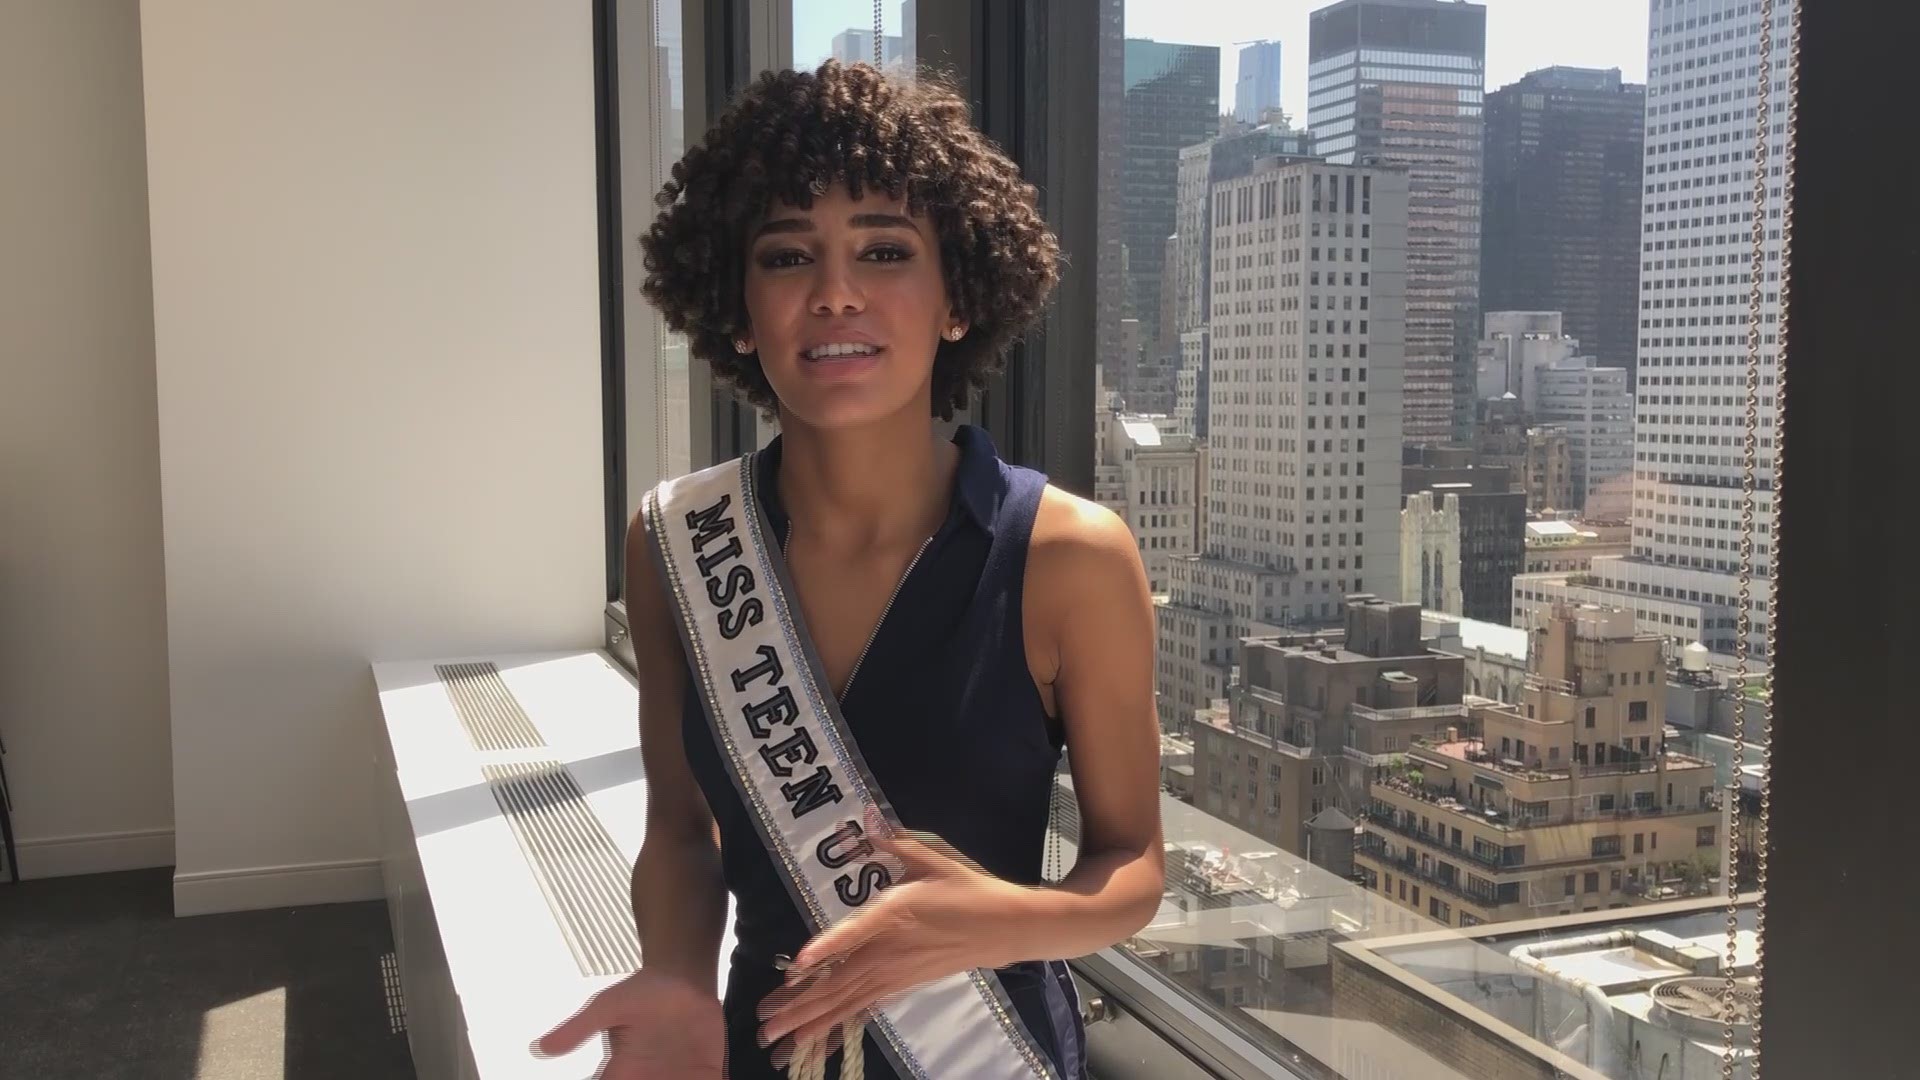 Miss Teen USA, Kaliegh Garris, sends message to local teen